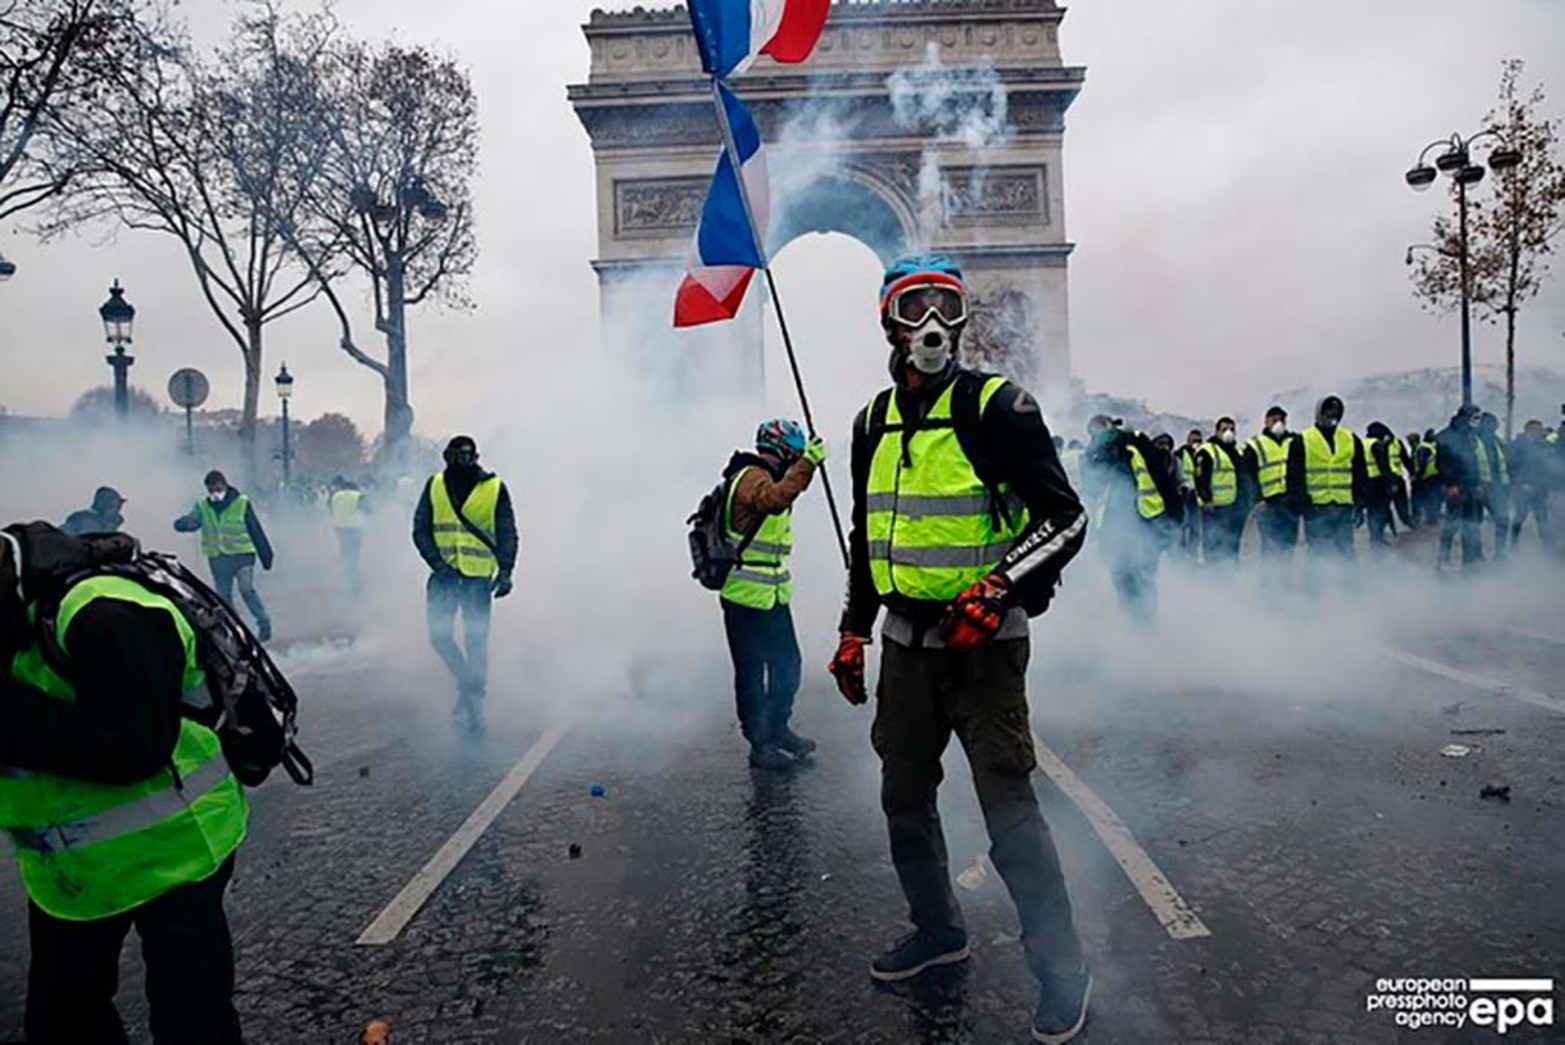 Francia se vuelve a pintar de amarillo en una nueva manisfestación social. Los llamados "Chalecos amarillos" vuelven a las calles esta vez por la reforma jubilatoria.